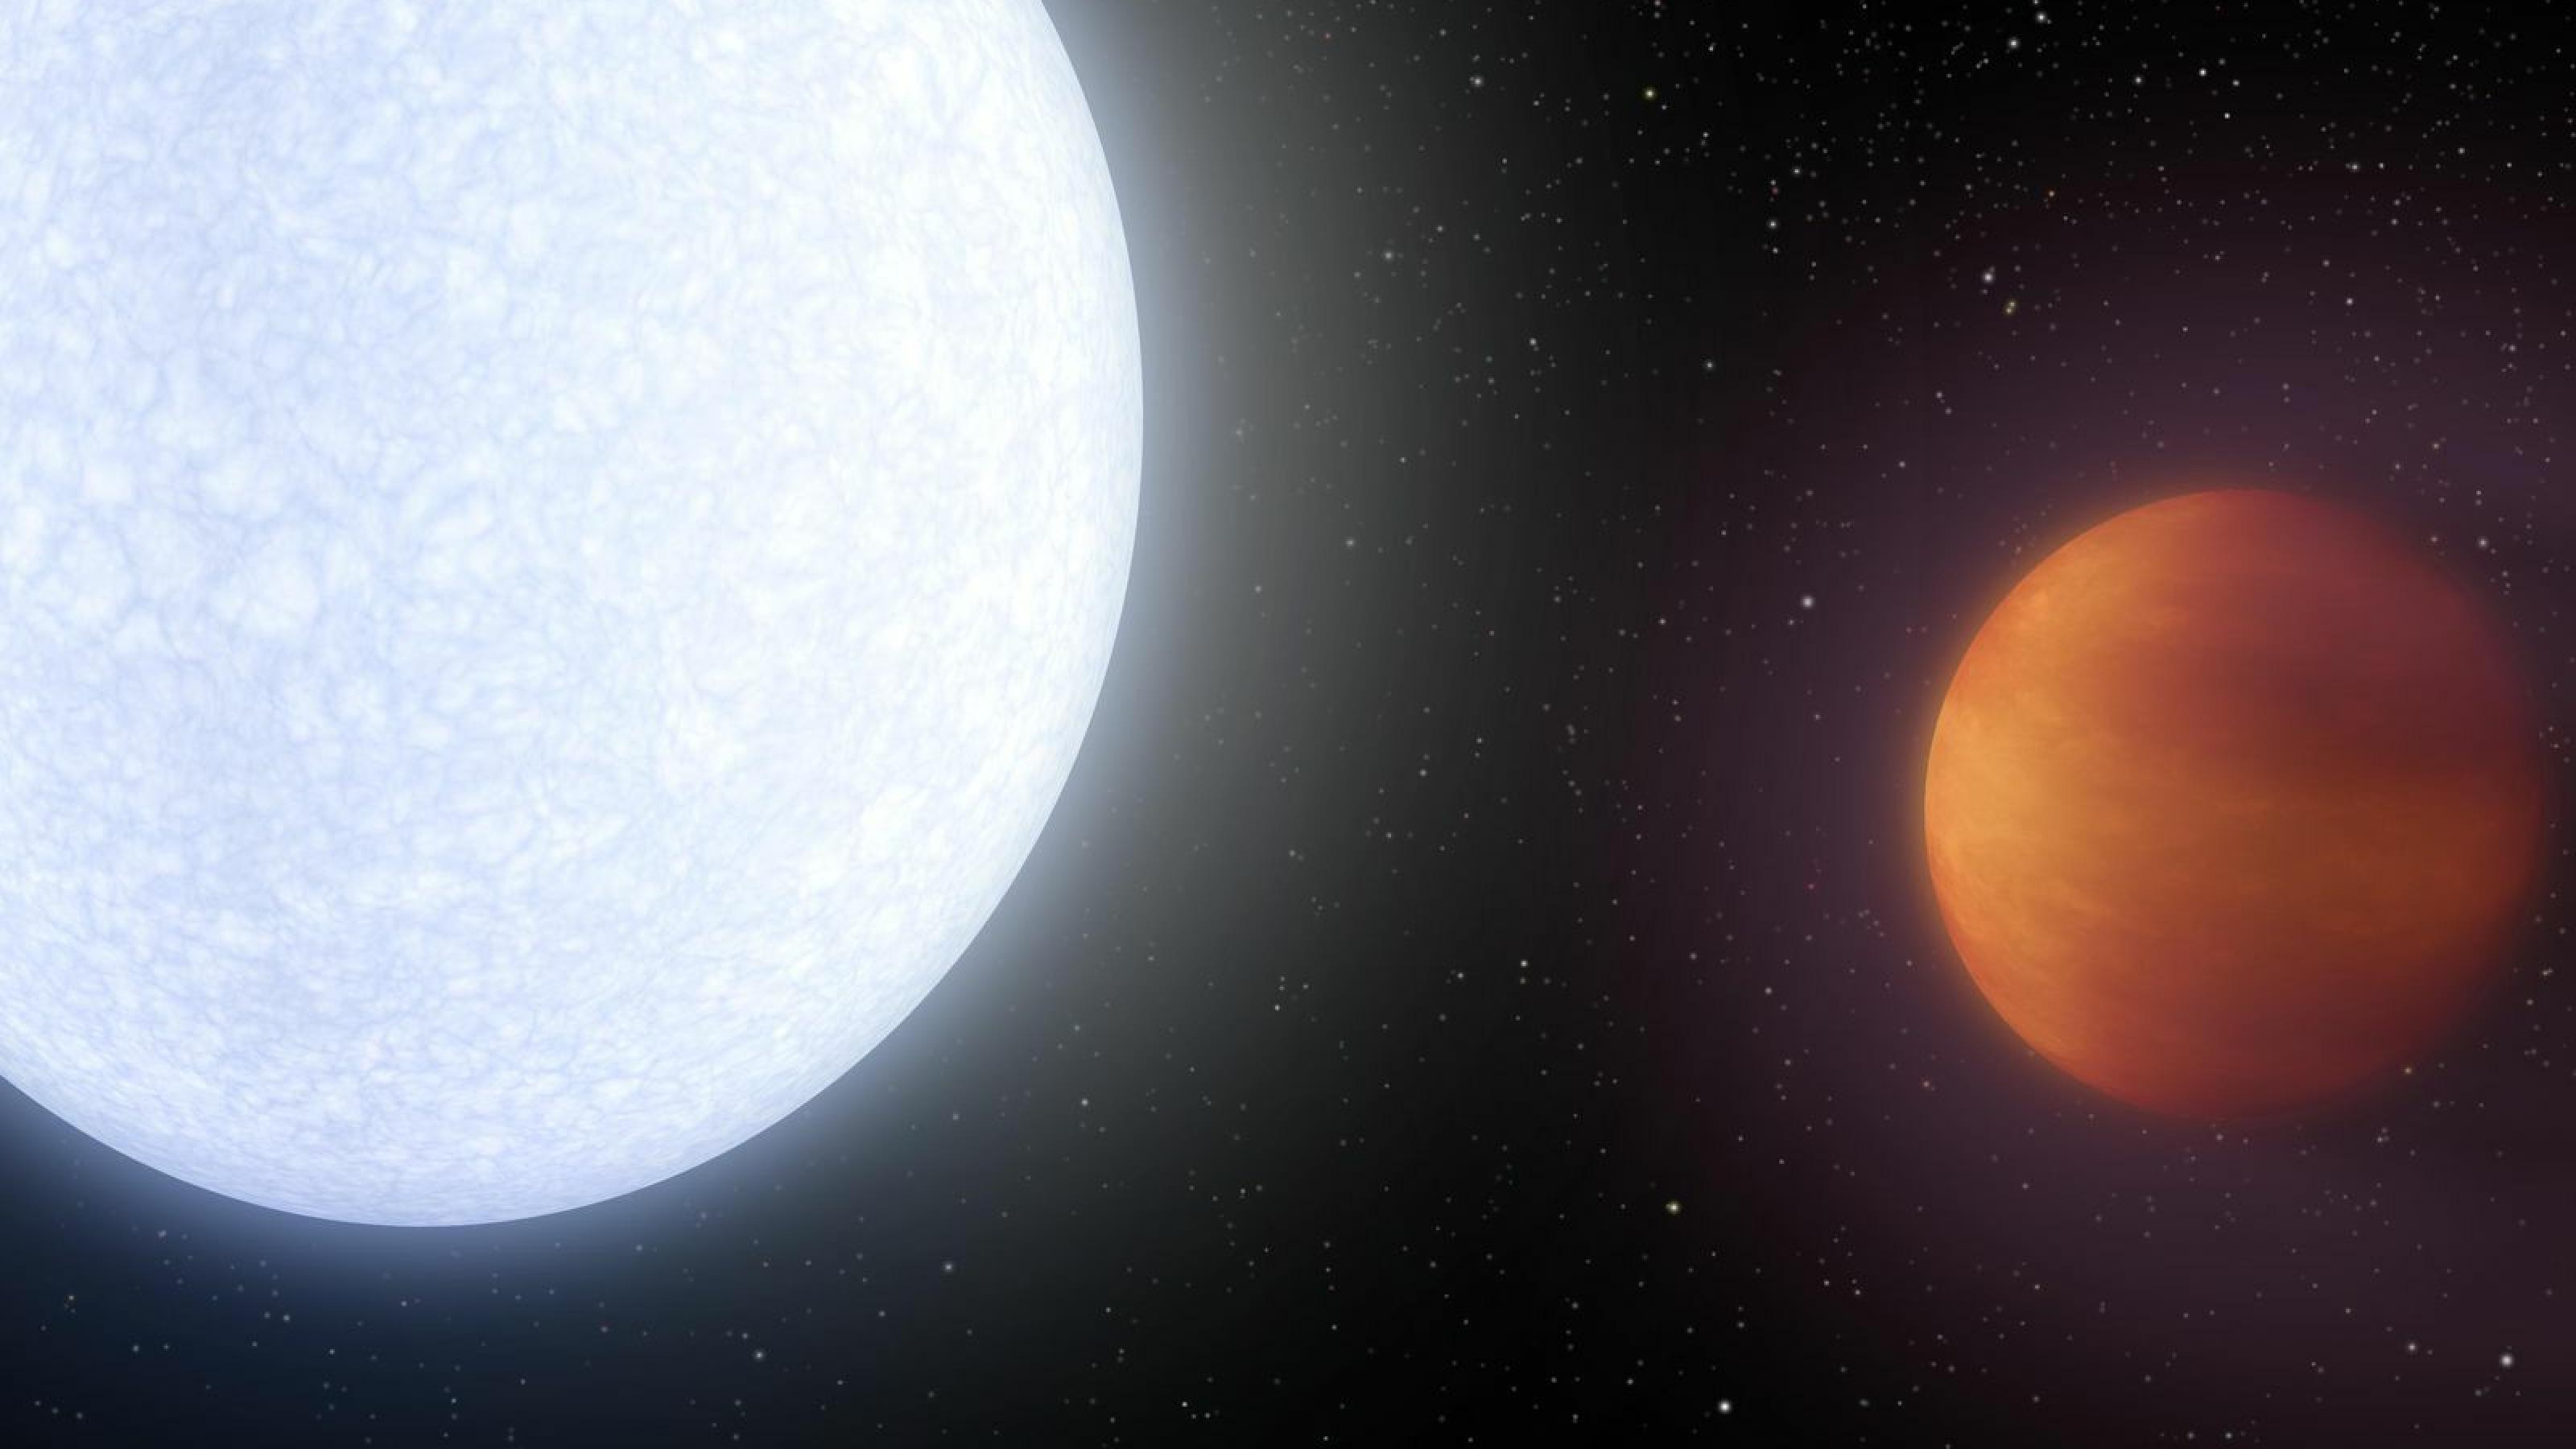 Die künstlerische Darstellung zeigt den Planeten Kelt-9b mit seinem Stern Kelt-9. Der Stern befindet sich links im Bild und leuchtet weiß bis bläulich, der Planet Kelt-9b befindet sich rechts im Bild, ist kleiner als der Stern und leuchtet selbst rötlich.